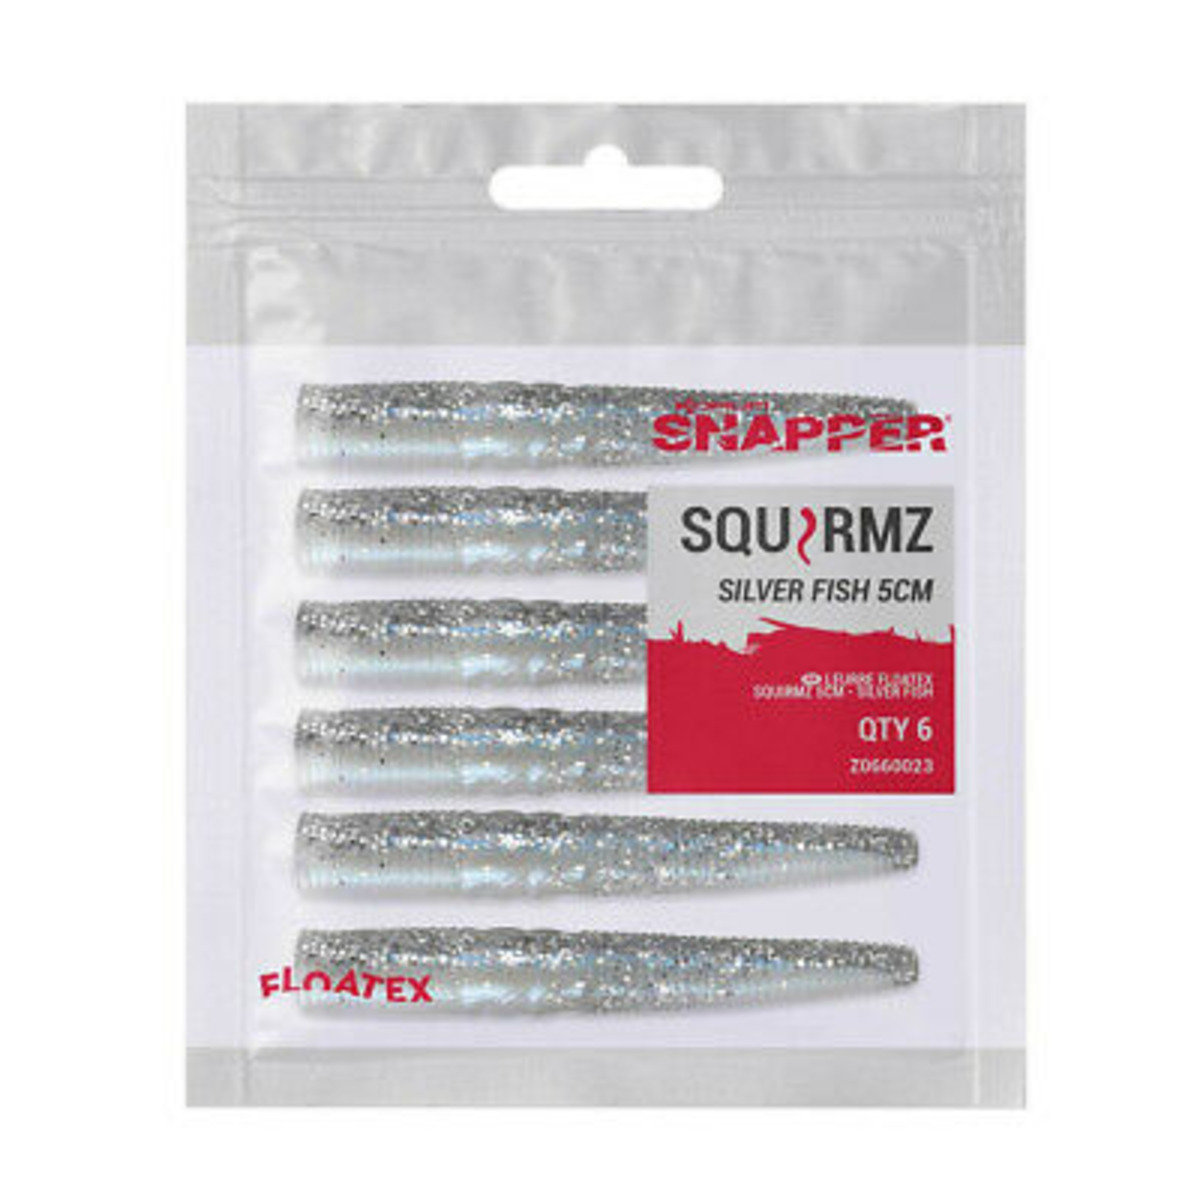 Korum Floatex Squirmz 7,5 Cm - SILVER FISH